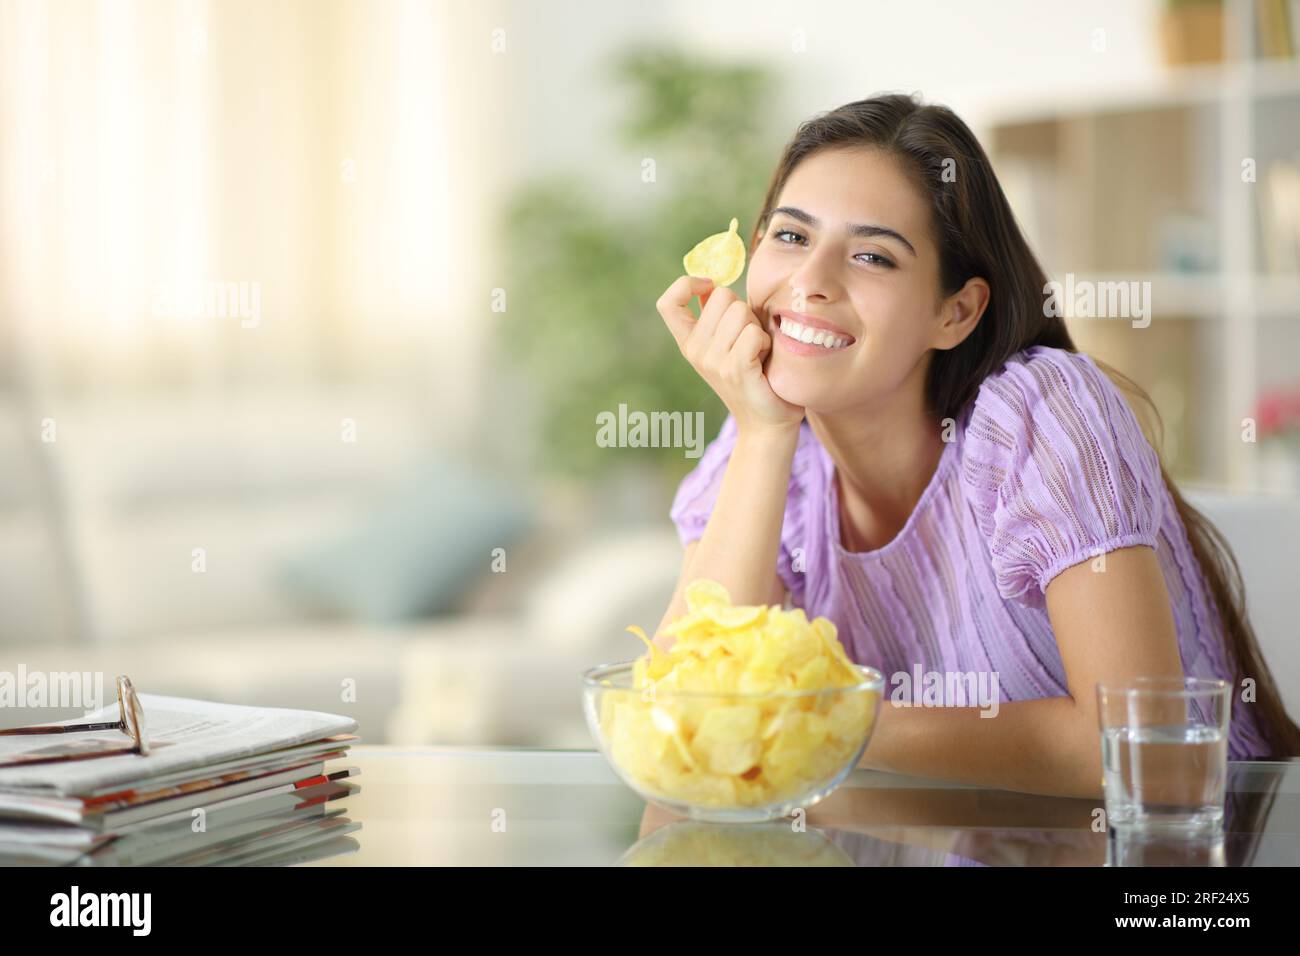 Femme heureuse posant avec chip potatos vous regardant à la maison Banque D'Images